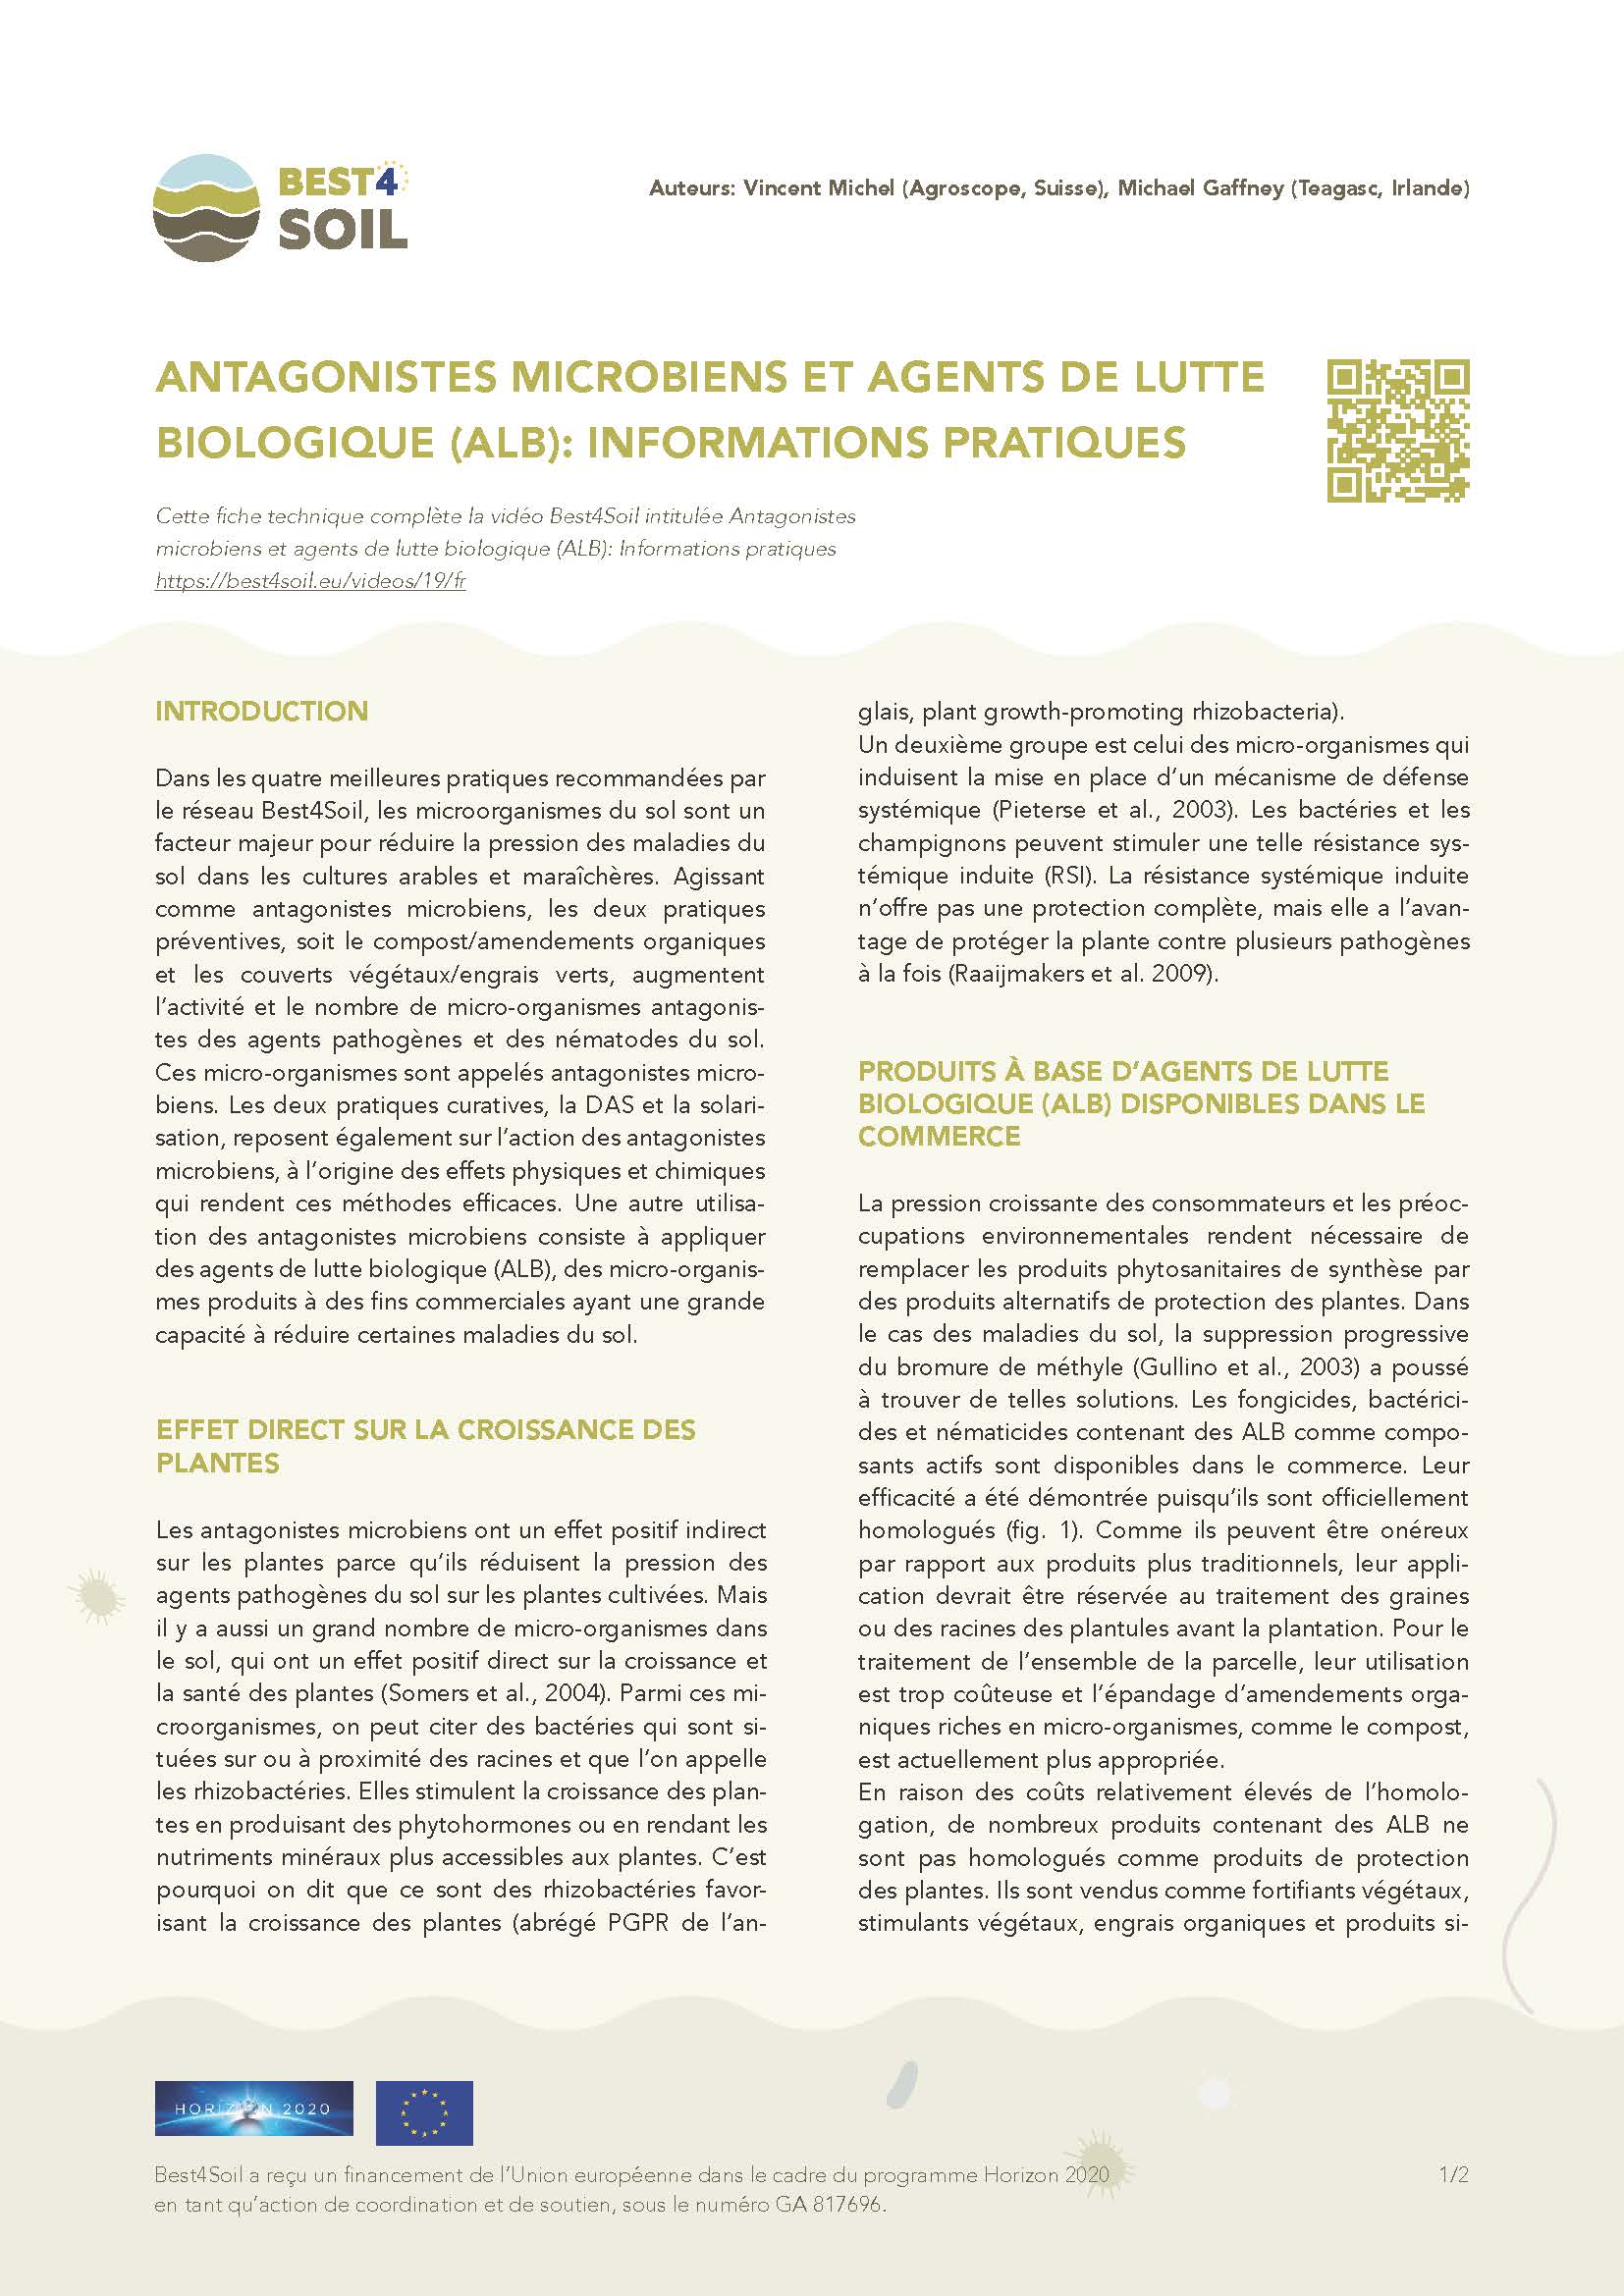 Mikroobide antagonistid ja bca: praktiline teave (Best4Soili teabeleht)